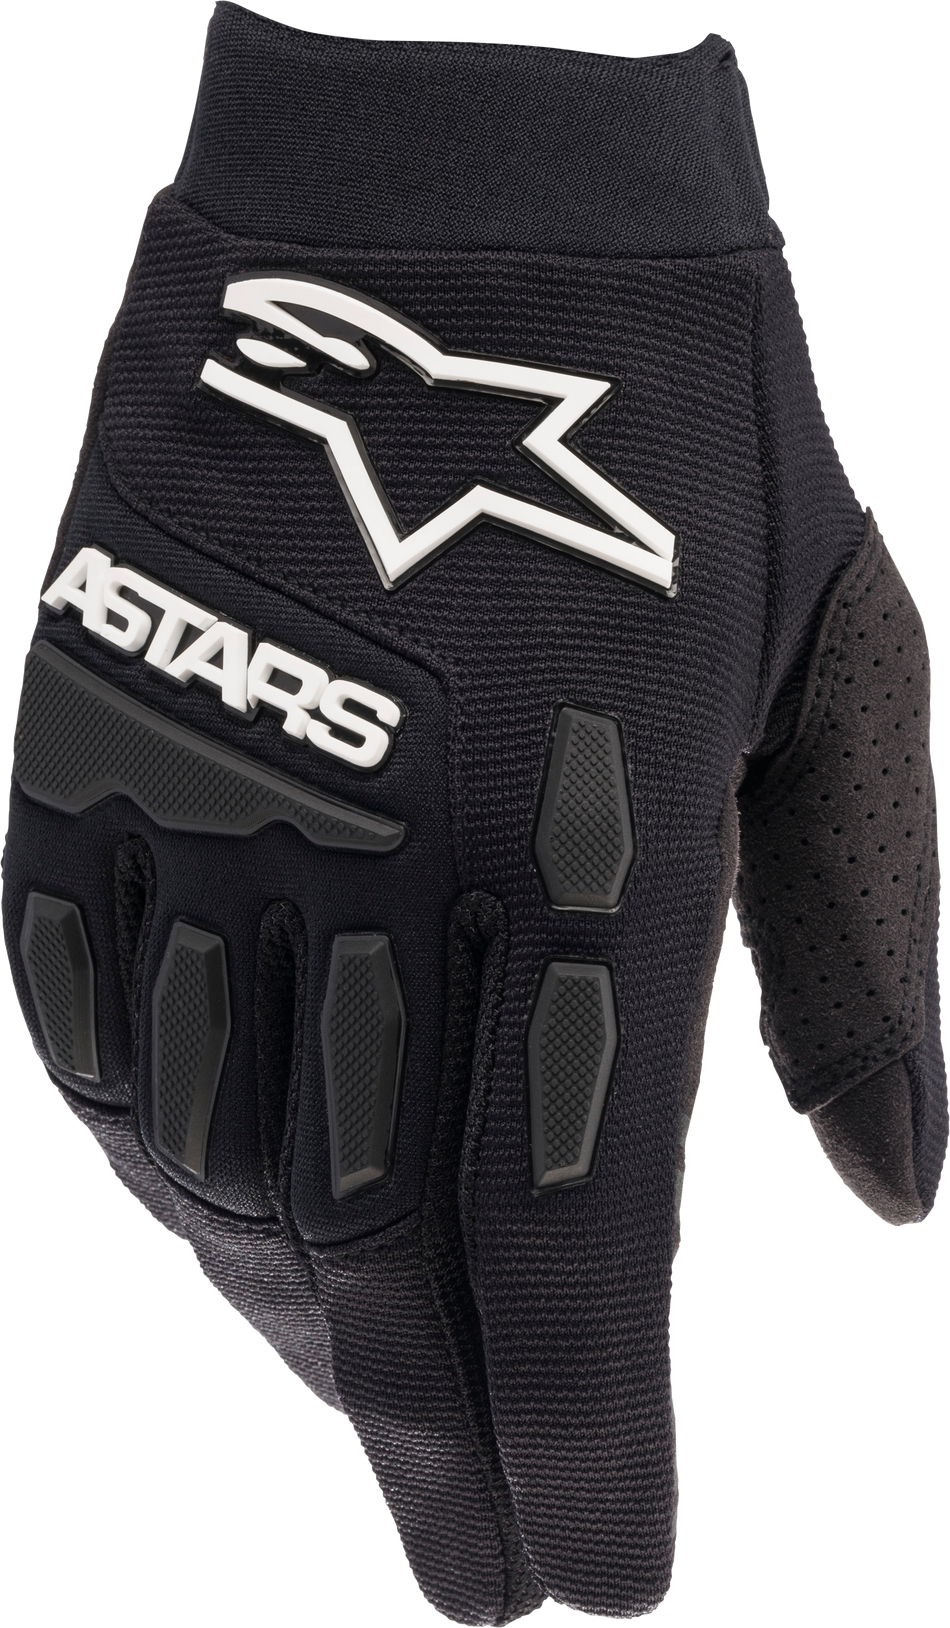 ALPINESTARS Full Bore Gloves Black/White Md 3563622-10-M